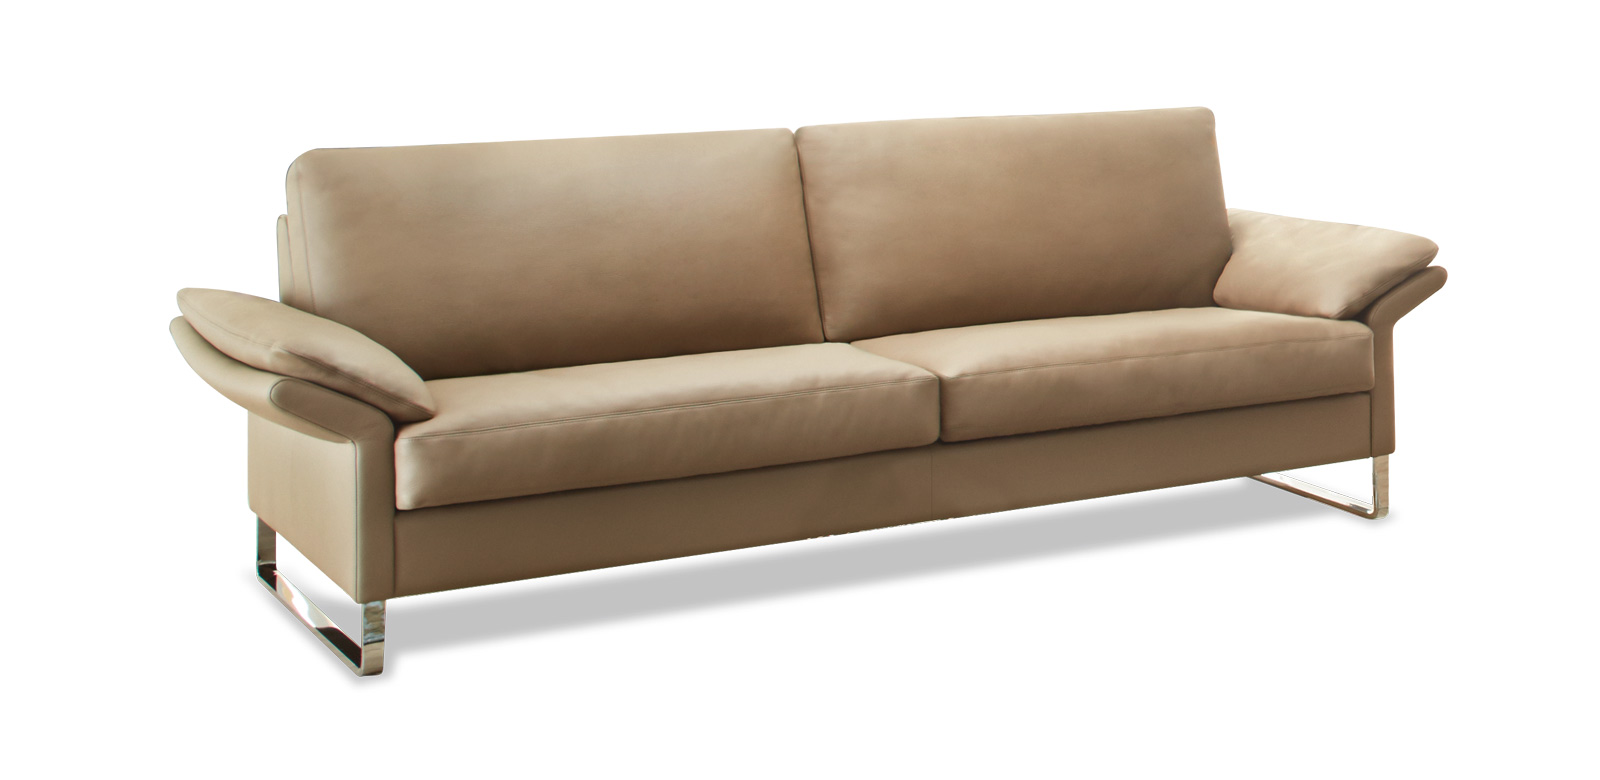 CL960 Sofa auf Chrome-Kufen